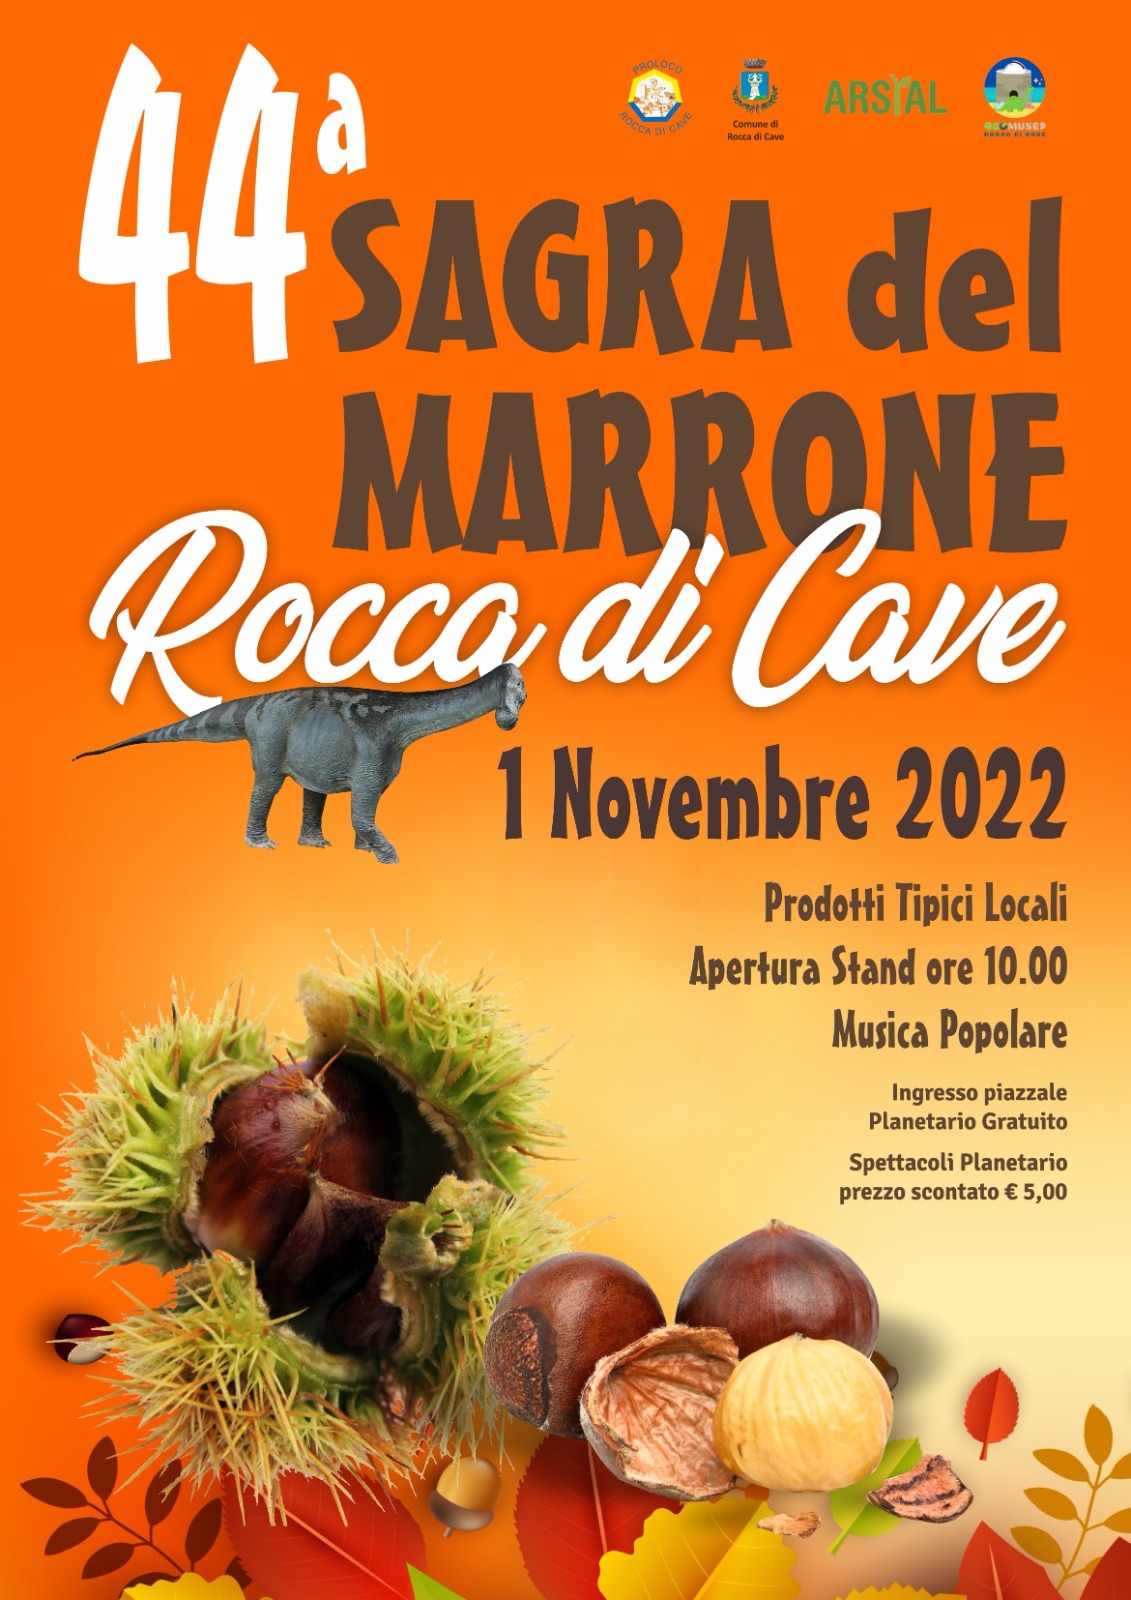 https://www.lacicala.org/immagini_news/26-10-2022/44-sagra-del-marrone-a-rocca-di-cave-1-novembre-2022-.jpg